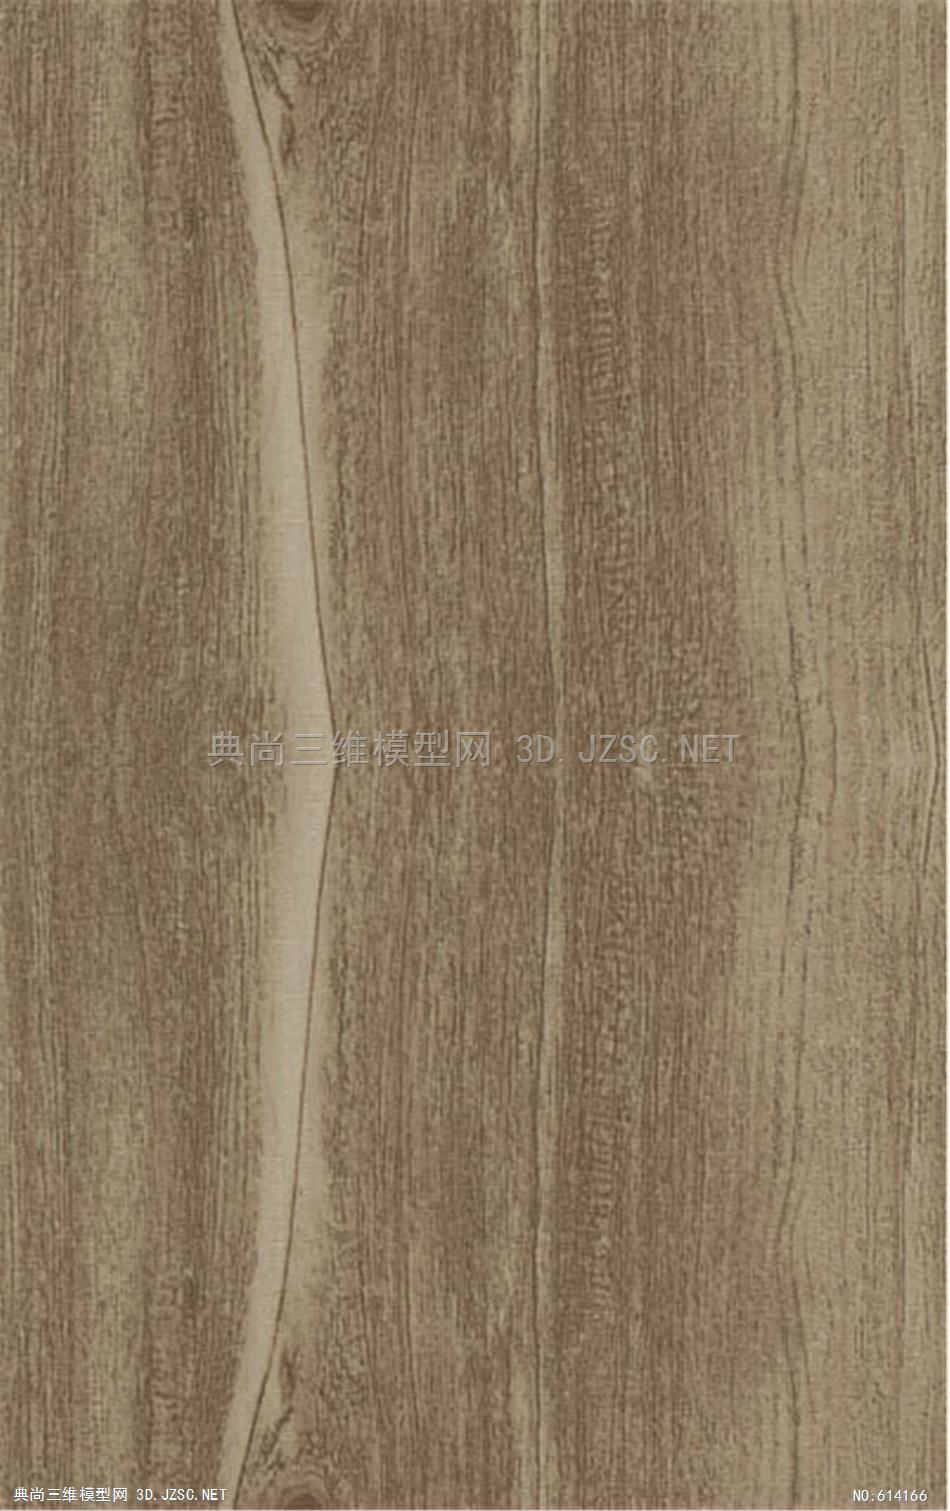 木饰面 木纹 木材  高清材质贴图 (246)